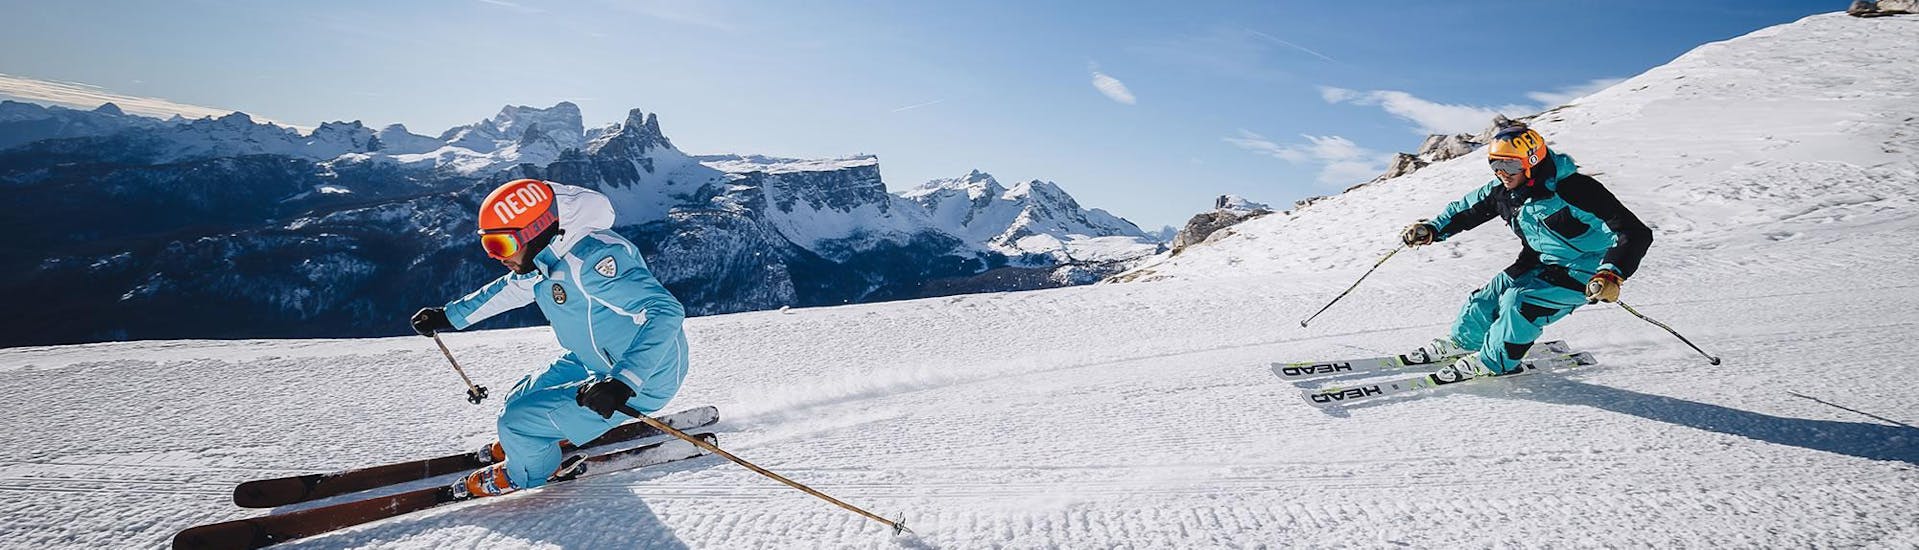 Een skileraar leidt de weg naar beneden op een skihelling in het skigebied van Cortina d'Ampezzo tijdens een van de Privé Skilessen voor Volwassenen - VIP georganiseerd door de skischool Scuola di Sci e Snowboard Cristallo Cortina.